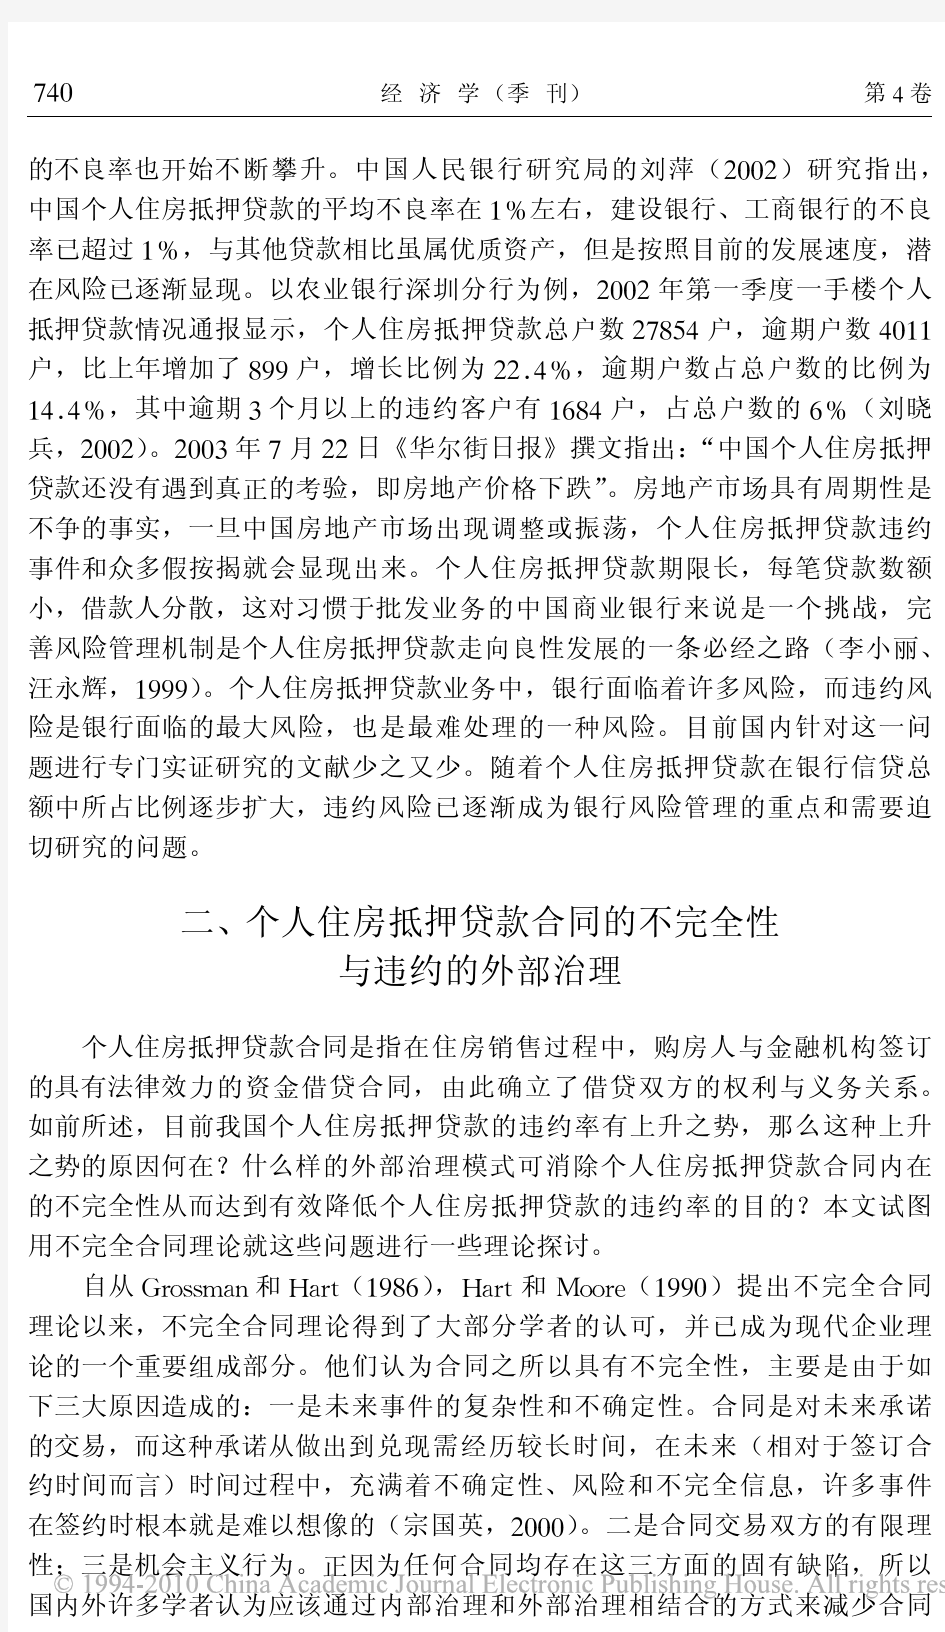 个人住房抵押贷款违约风险影响因素实证研究_以杭州市为例_王福林